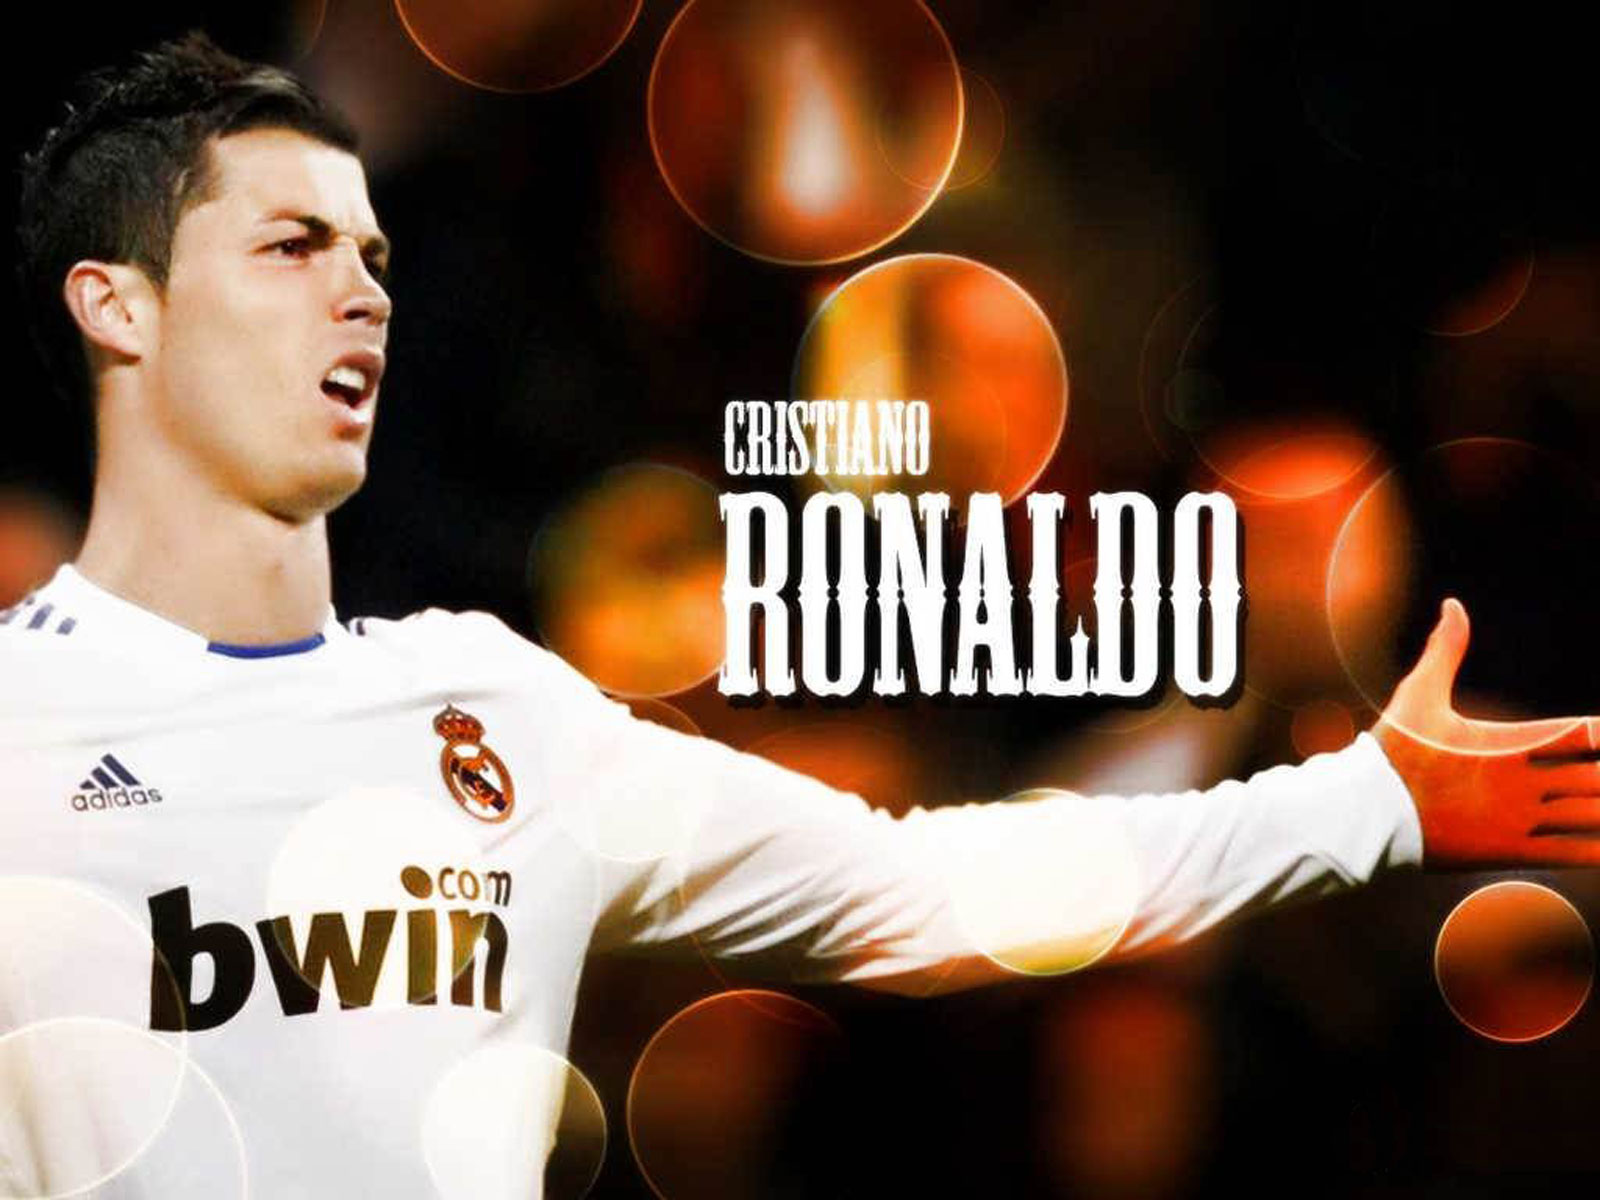 http://2.bp.blogspot.com/-FoBDu1YS3H4/ULfosxmCsjI/AAAAAAAAABw/pJE6JJwEkqQ/s1600/Cristiano+Ronaldo+1.jpg